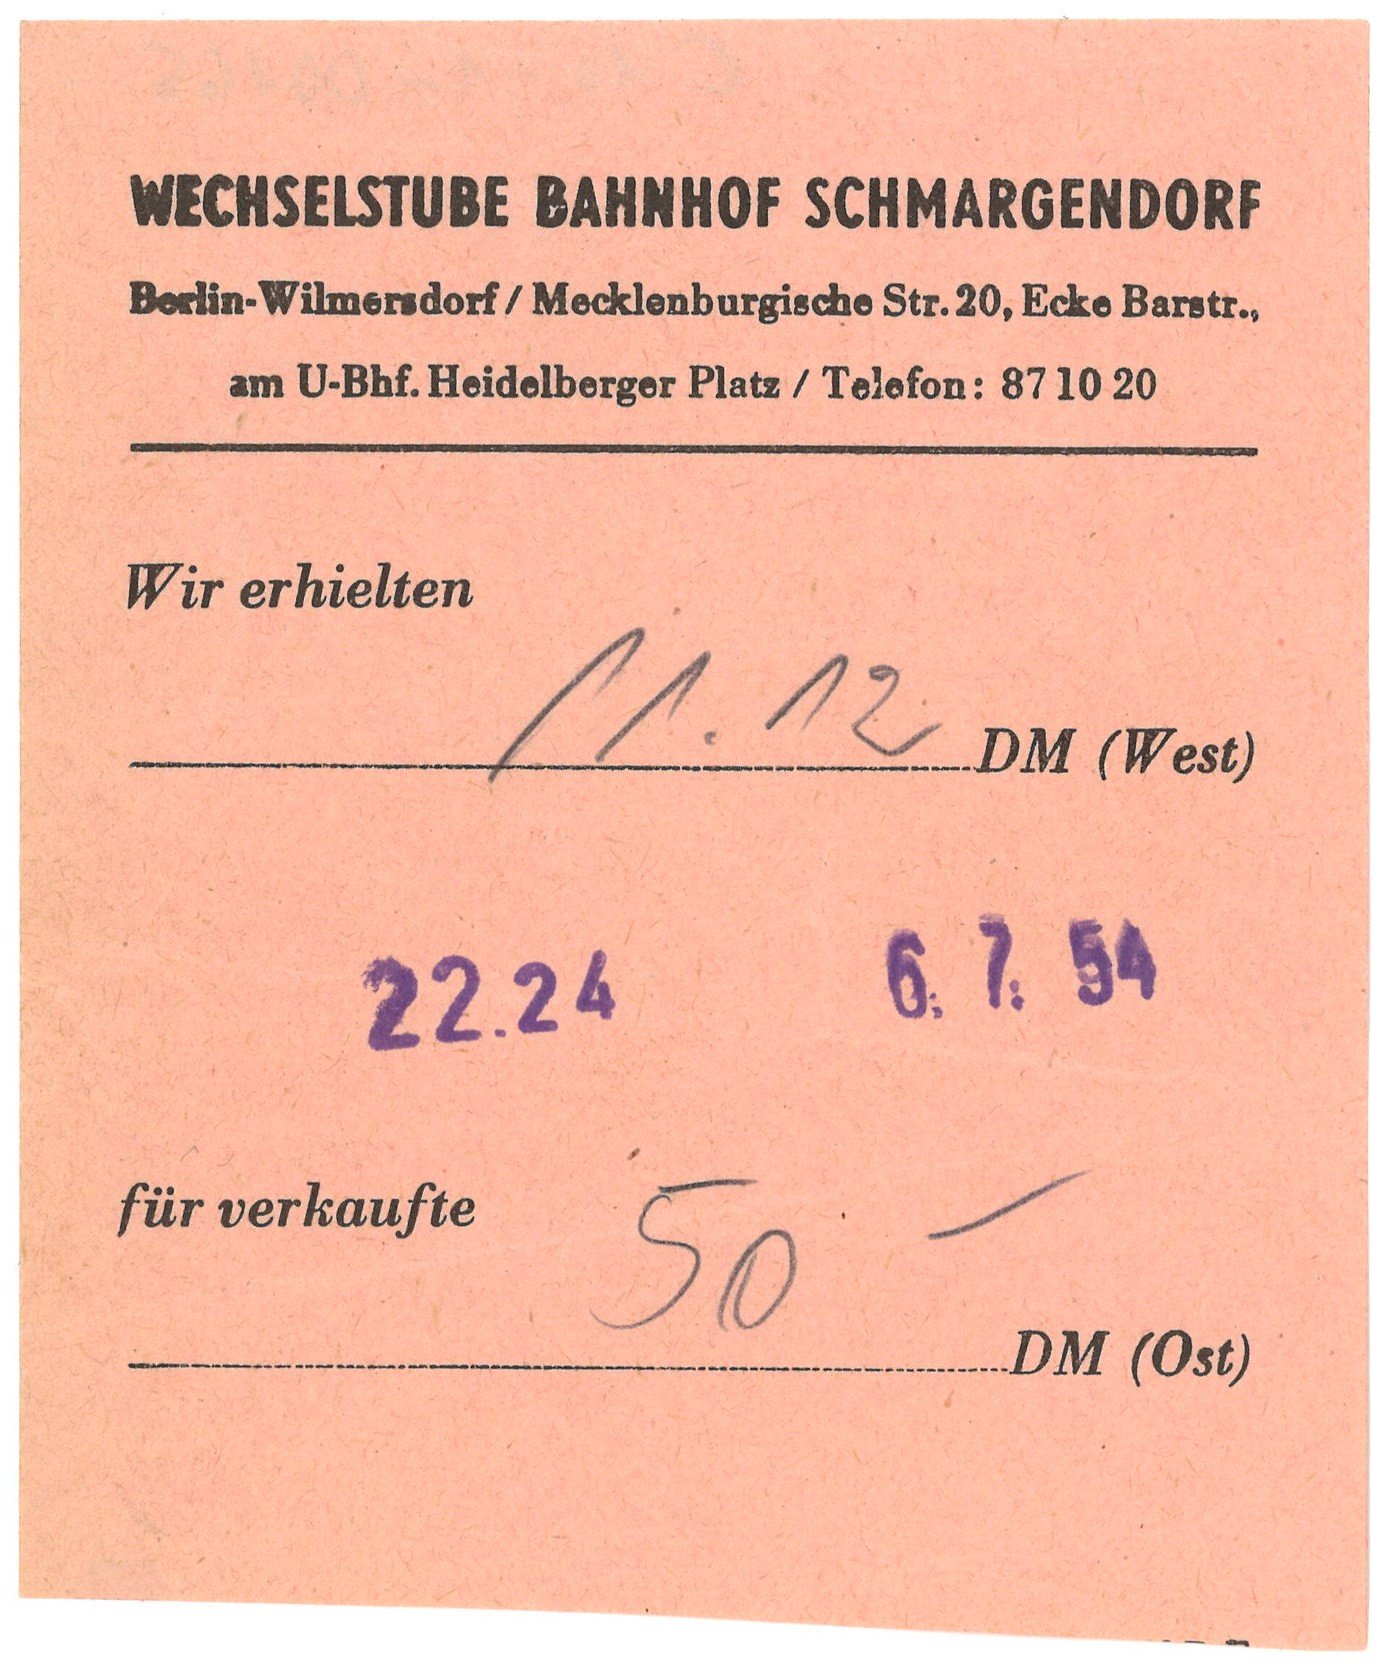 Umtauschquittung der Wechselstube Bahnhof Schmargendorf in Berlin 1954 (Landesgeschichtliche Vereinigung für die Mark Brandenburg e.V., Archiv CC BY)